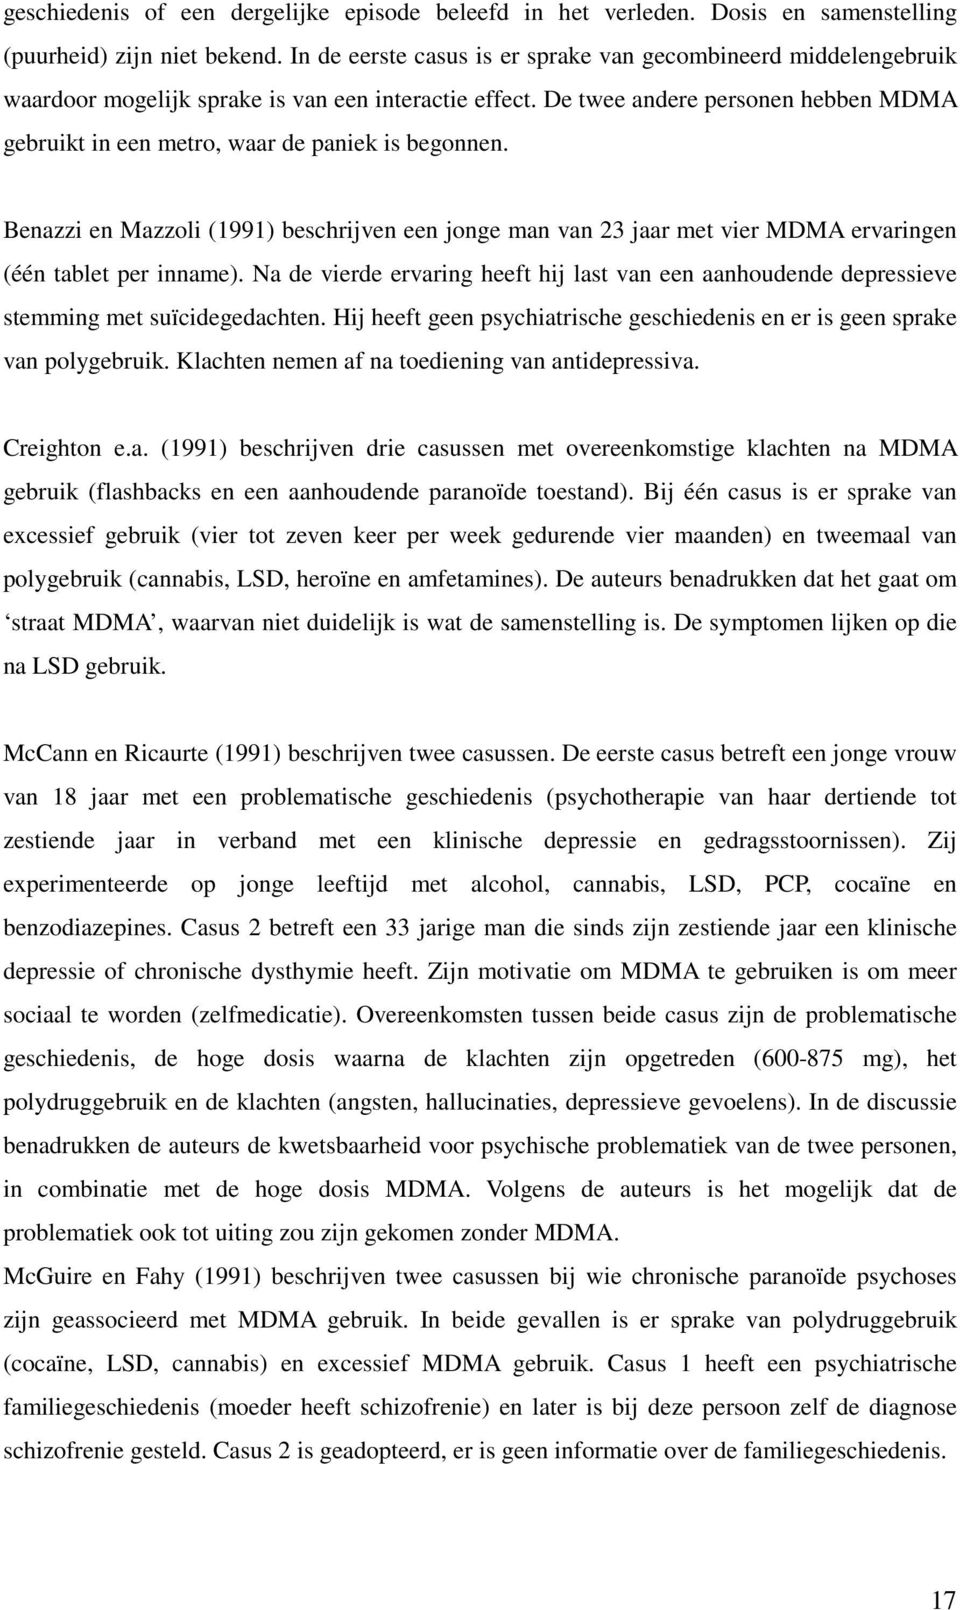 De twee andere personen hebben MDMA gebruikt in een metro, waar de paniek is begonnen. Benazzi en Mazzoli (1991) beschrijven een jonge man van 23 jaar met vier MDMA ervaringen (één tablet per inname).